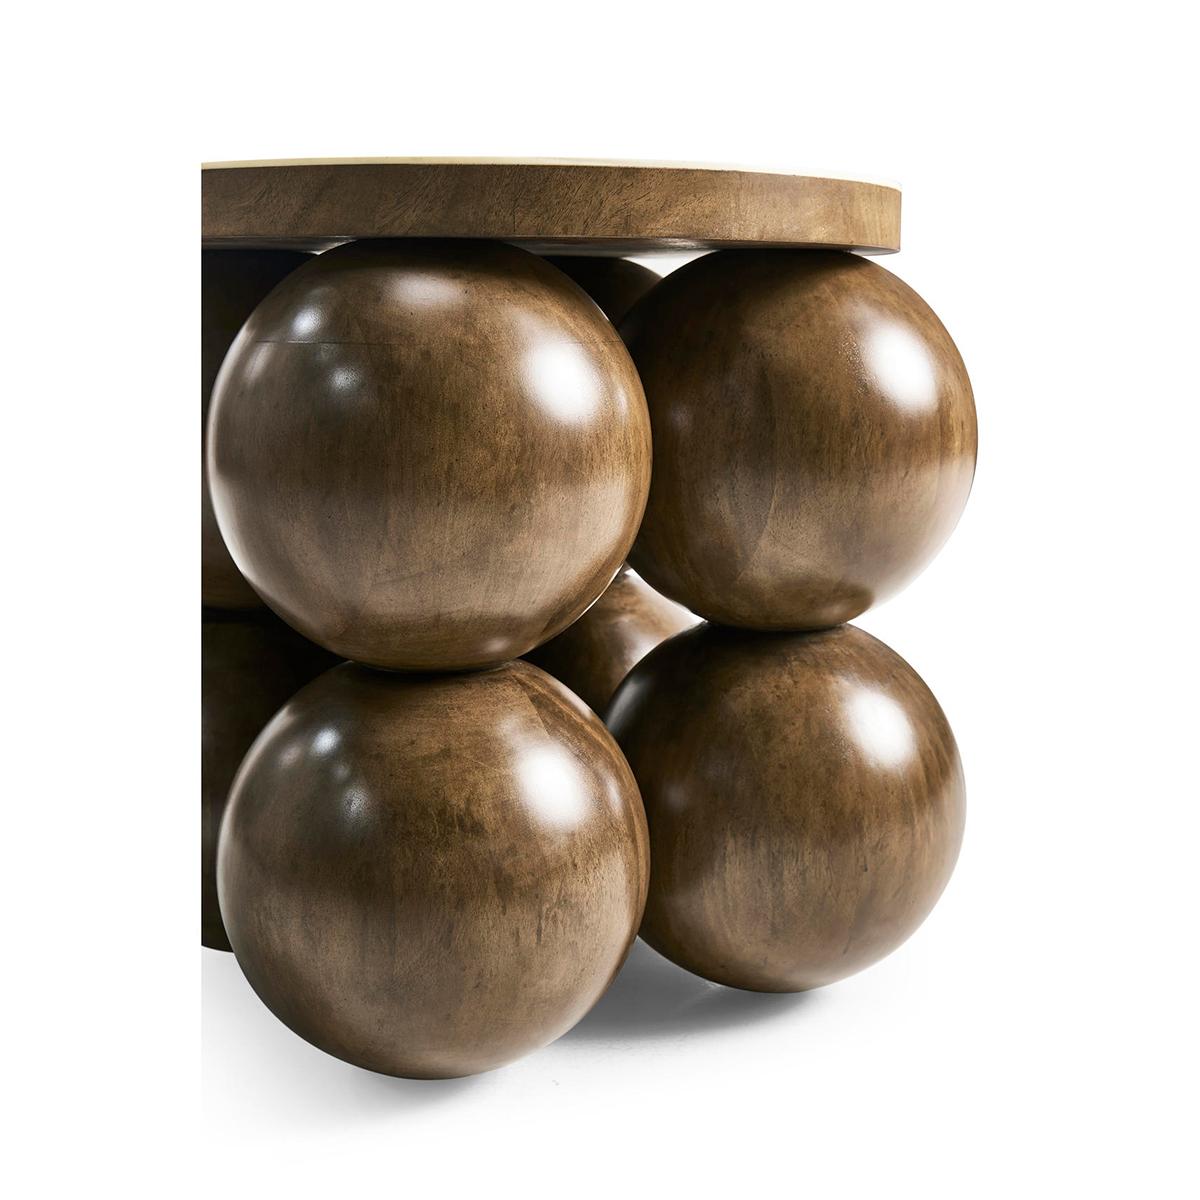 Die aus Massivholz gestapelten Kugeln des Tisches bilden ein charismatisches Fundament, das Kunst und Funktionalität miteinander verbindet. Diese Kugeln schaffen ein einzigartiges und auffälliges Design, das dem Stück Persönlichkeit verleiht.

Die